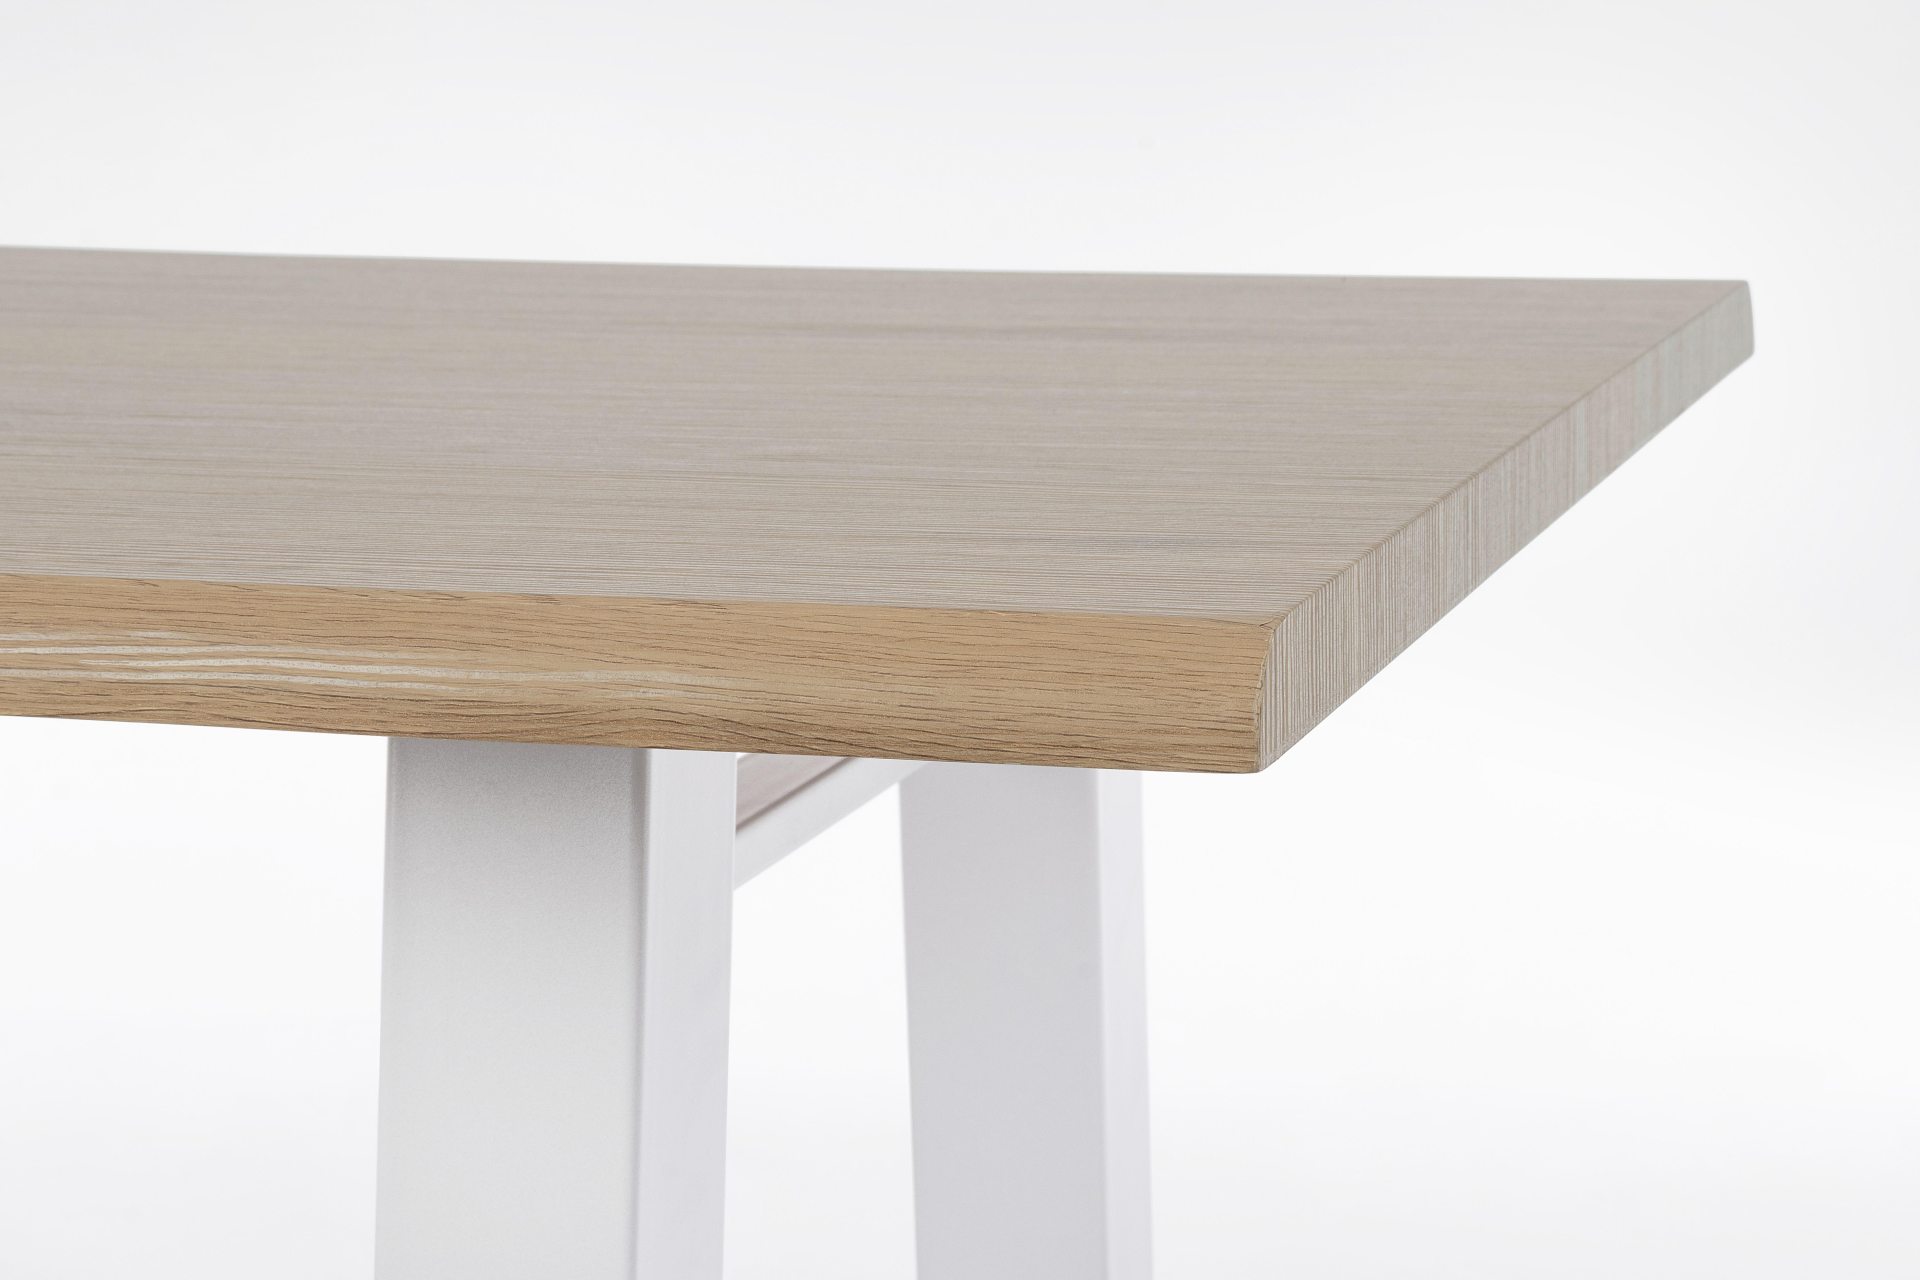 Der Esstisch Fred überzeugt mit seinem klassischem Design. Gefertigt wurde er aus MDF, welches eine Holz-Optik besitzt. Das Gestell des Tisches ist aus Metall und besitzt eine weißen Farbe. Der Tisch hat eine Breite von 180 cm.